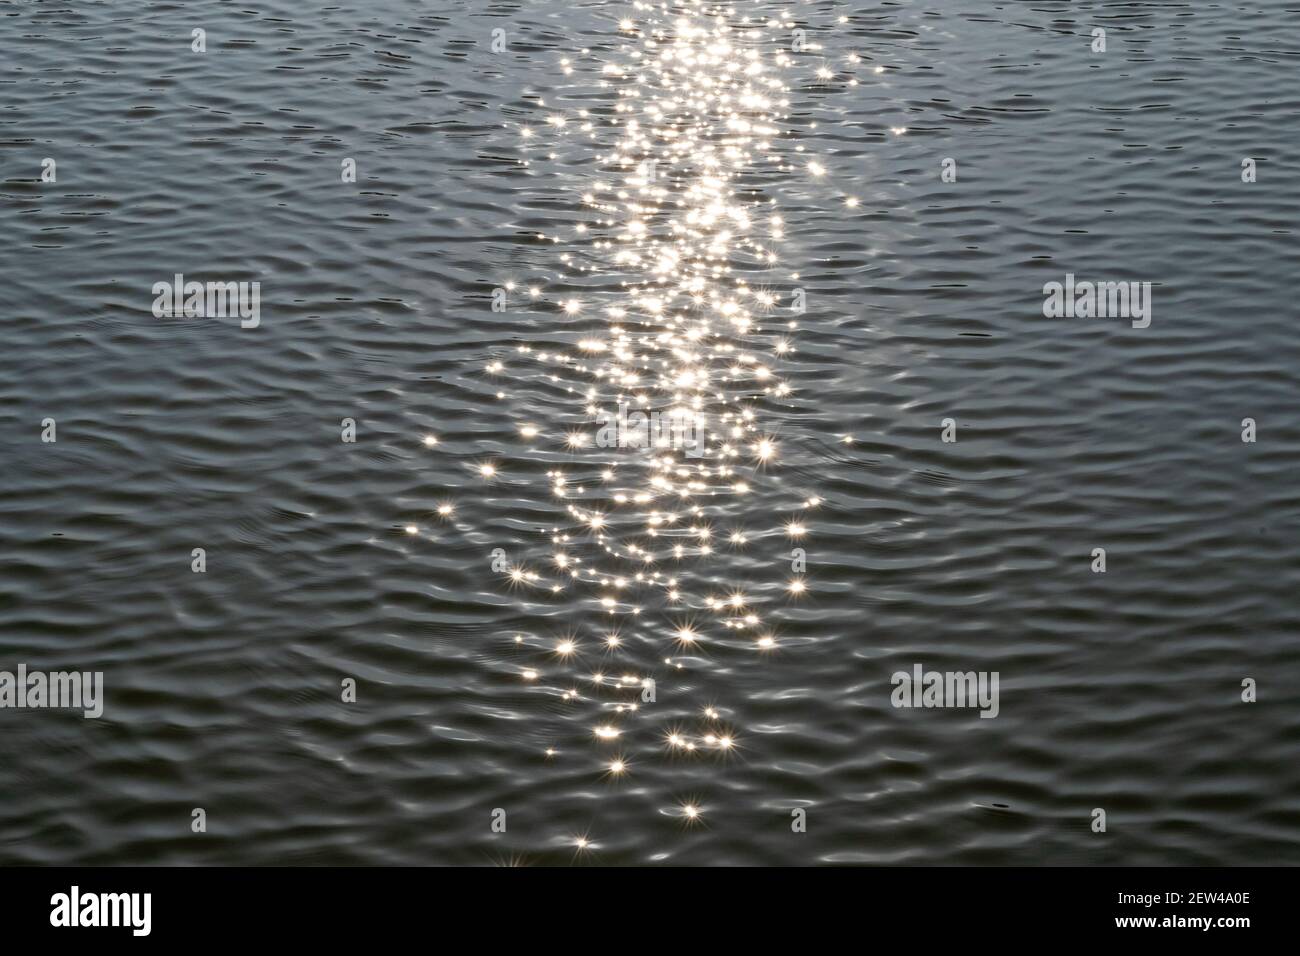 Sternförmige Sonnenstrahlen spiegeln sich in den Wellen in einem See oder Teich. Stockfoto